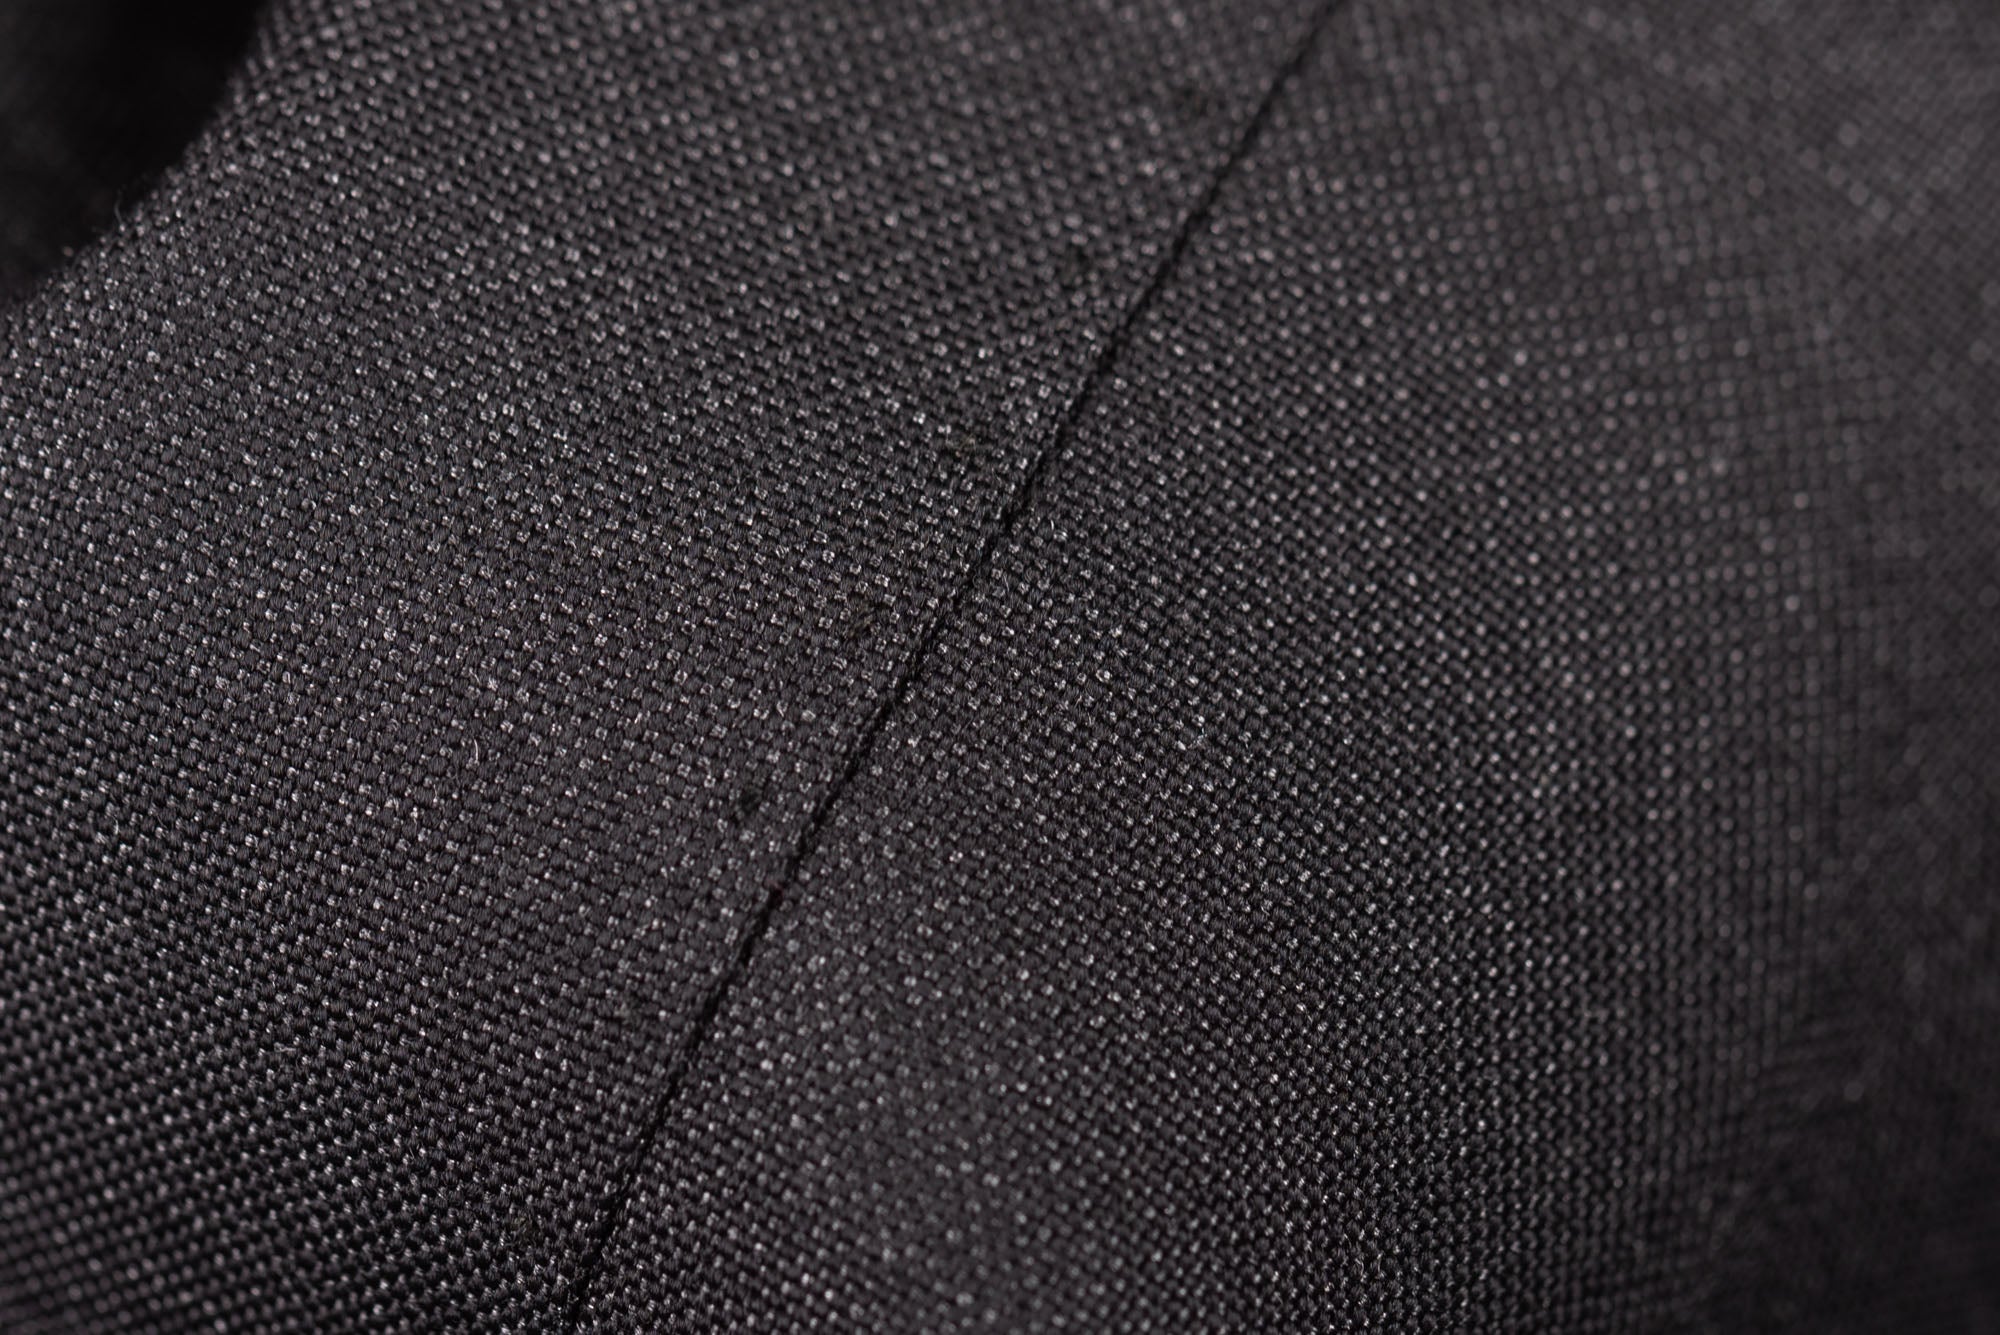 D'AVENZA for C. WIRSCHKE Handmade Gray Wool-Silk Suit EU 48 NEW US 38 Long